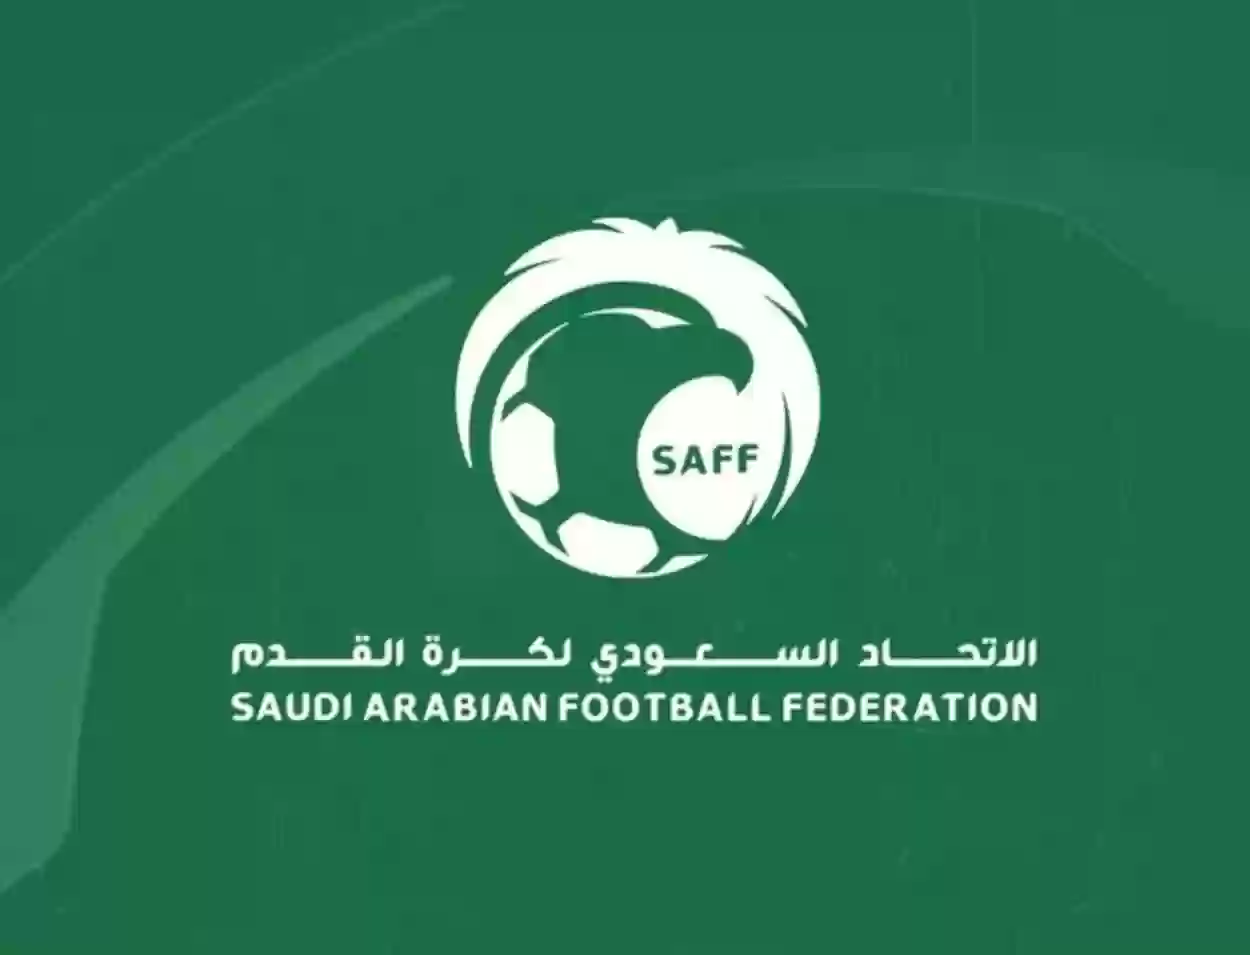 الاتحاد الآسيوي يتحدى الاتحاد السعودي لكرة القدم